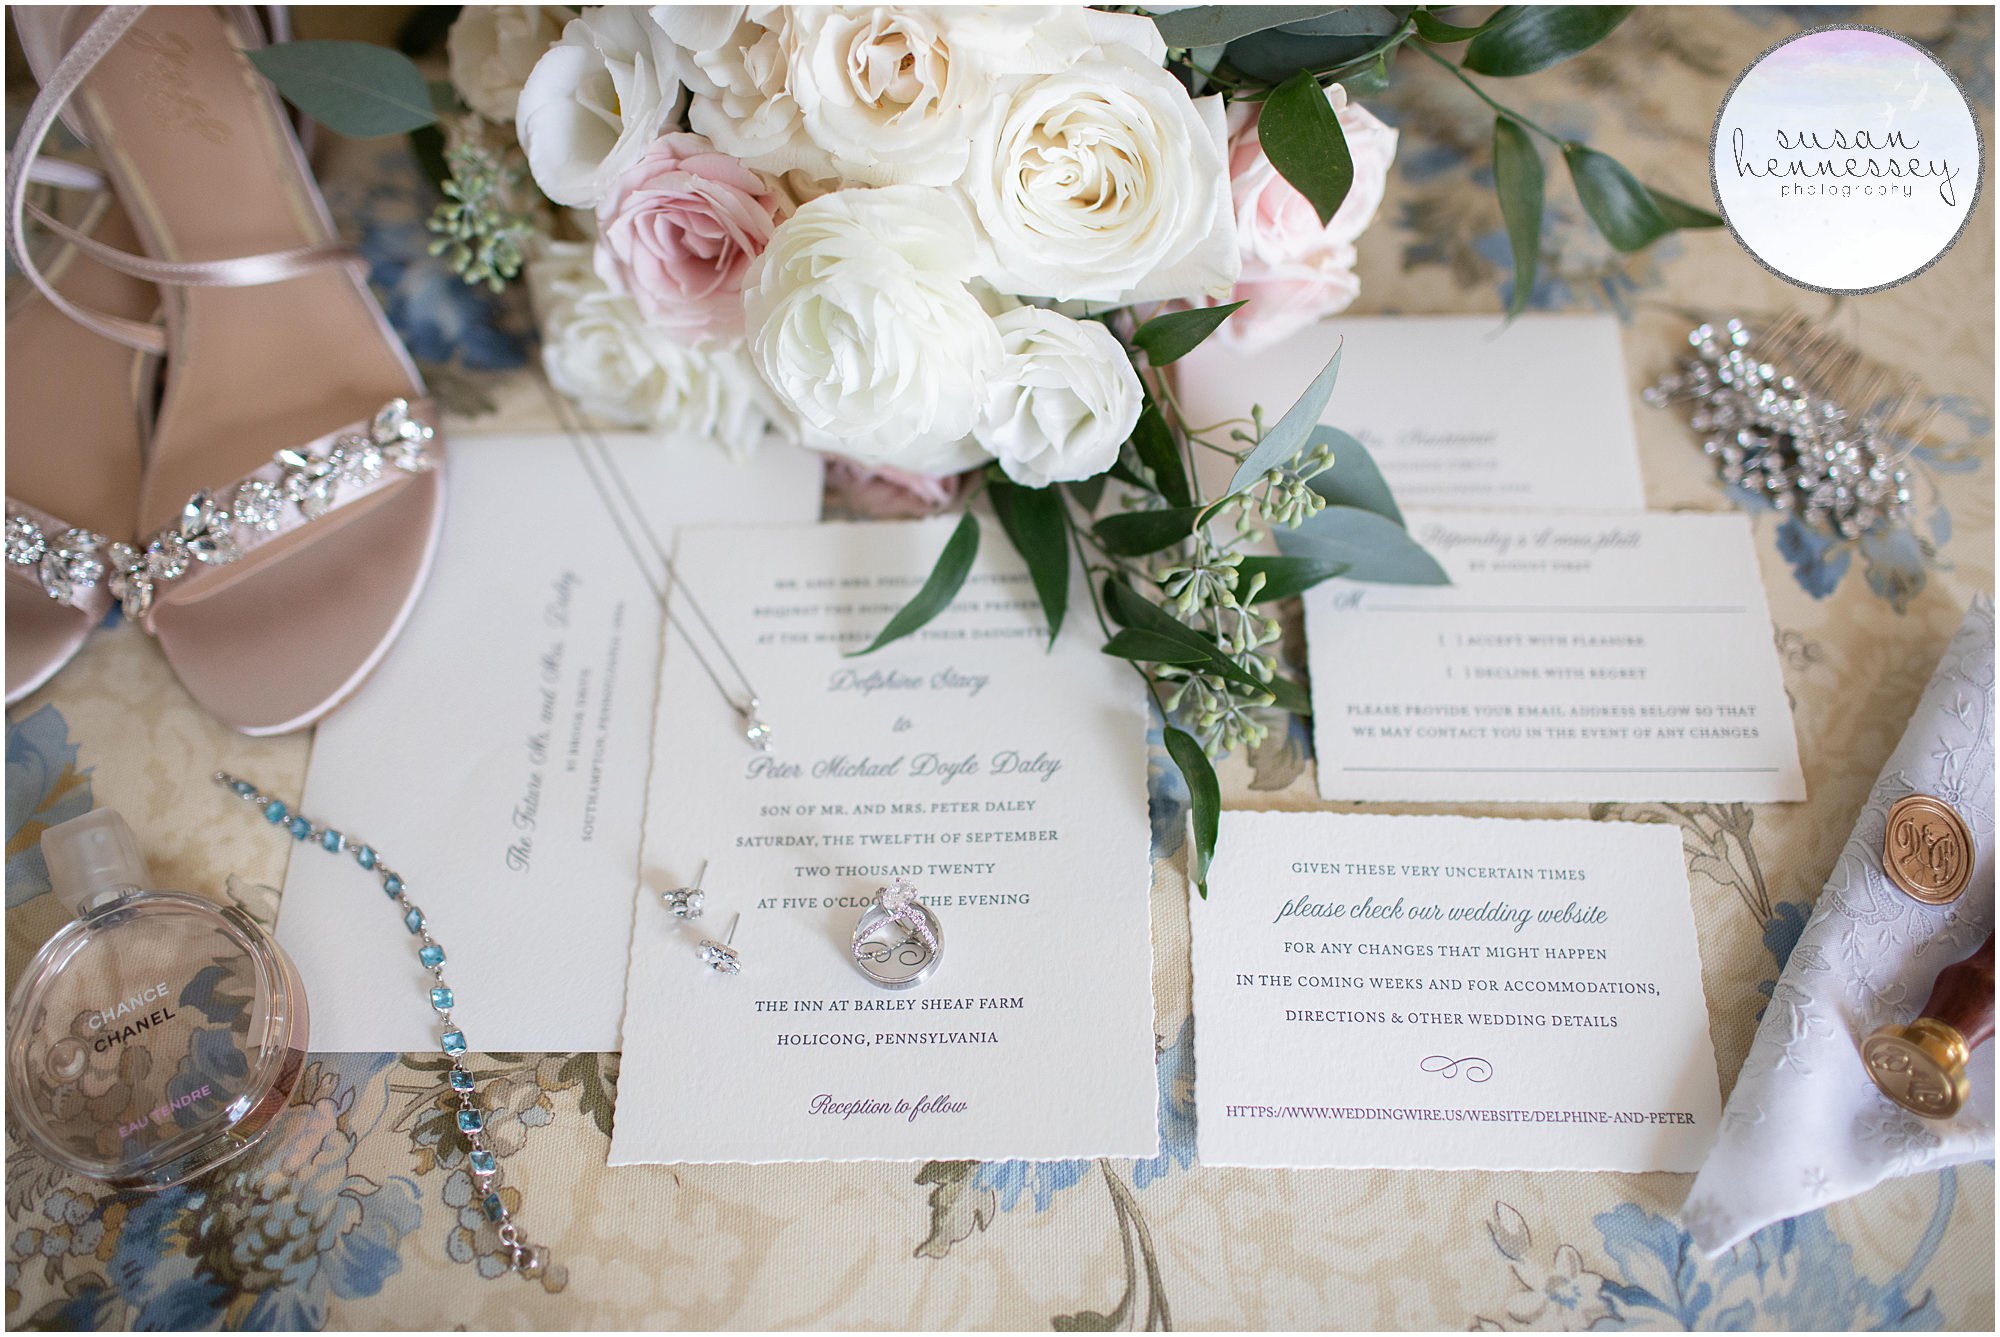 Bridal details for romantic and elegant Inn at Barley Sheaf Farm Wedding